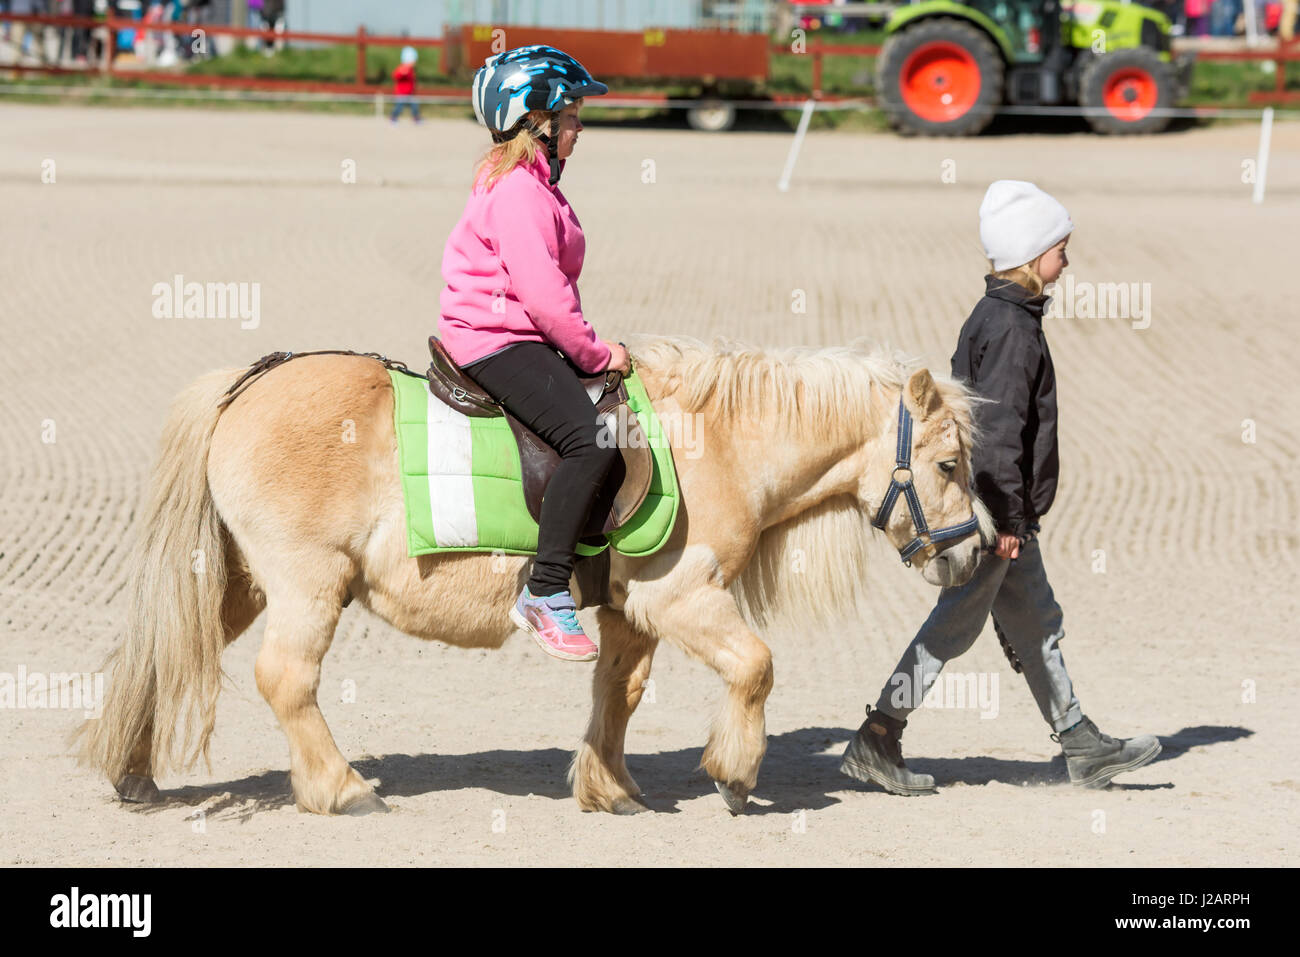 Brakne Hoby, Schweden - 22. April 2017: Dokumentation der öffentlichen Kleinbauern Tag. Junges Mädchen Ponyreiten mit jungen Handler vor Pferd. Beide looki Stockfoto